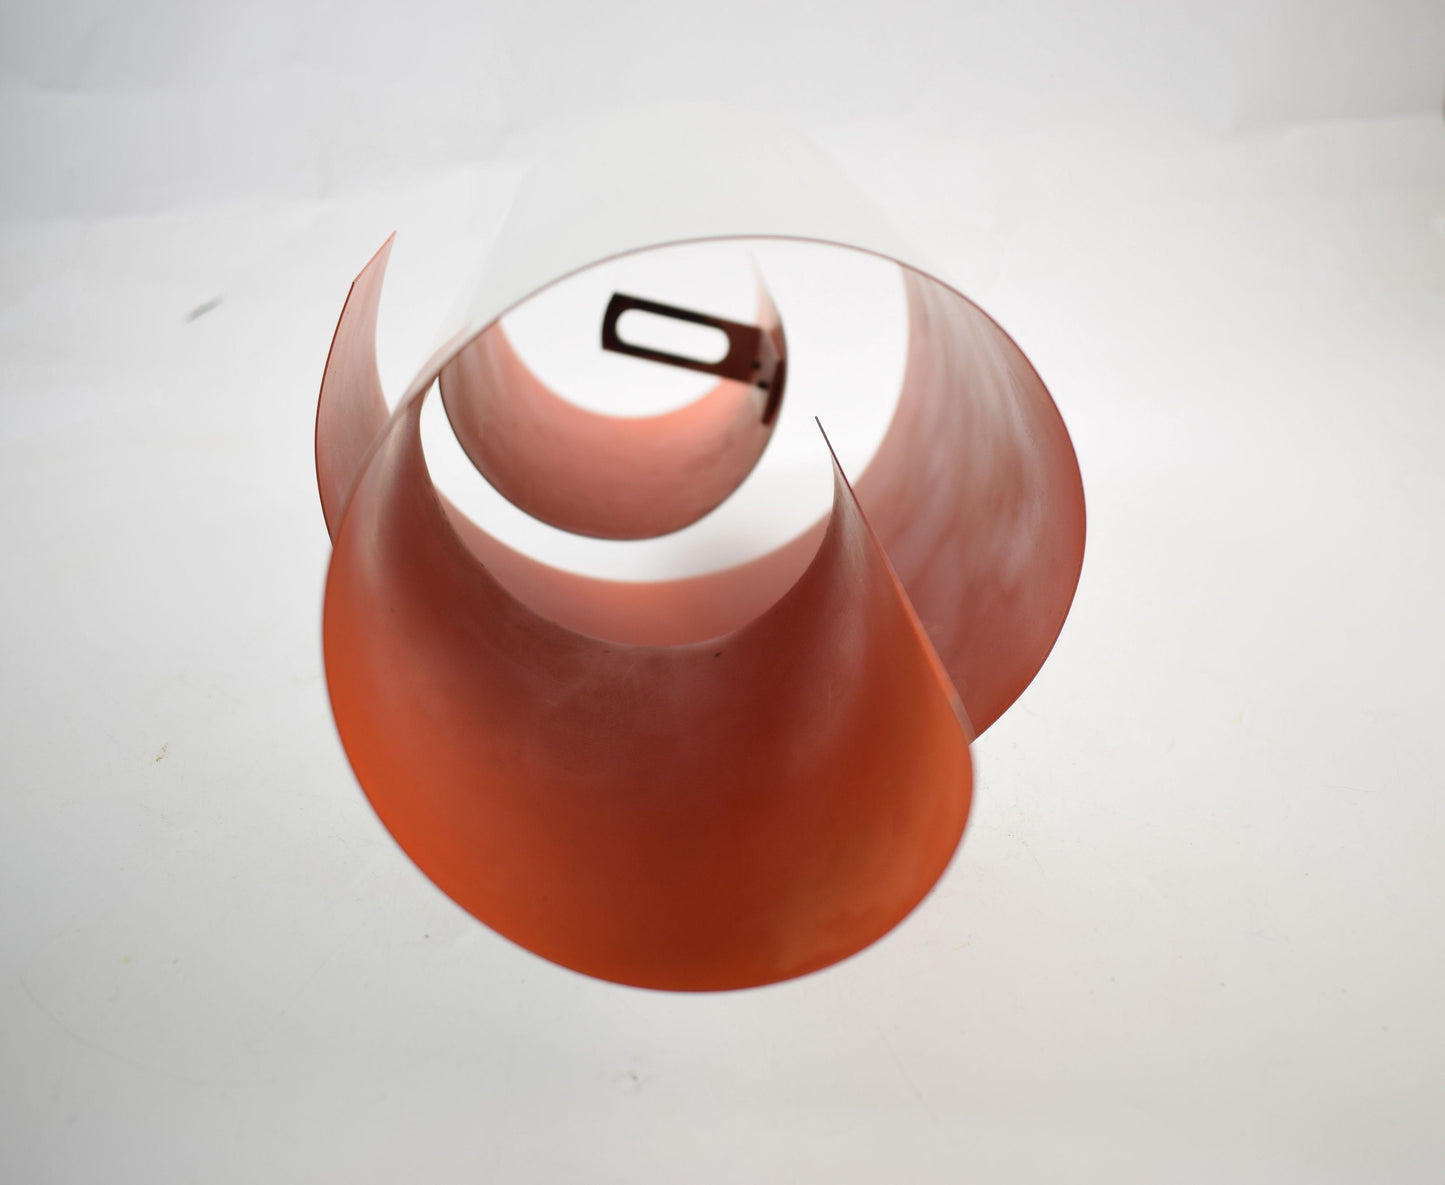 LYFA SWIRL by Simon Henningsen white Danish design pendant lamp